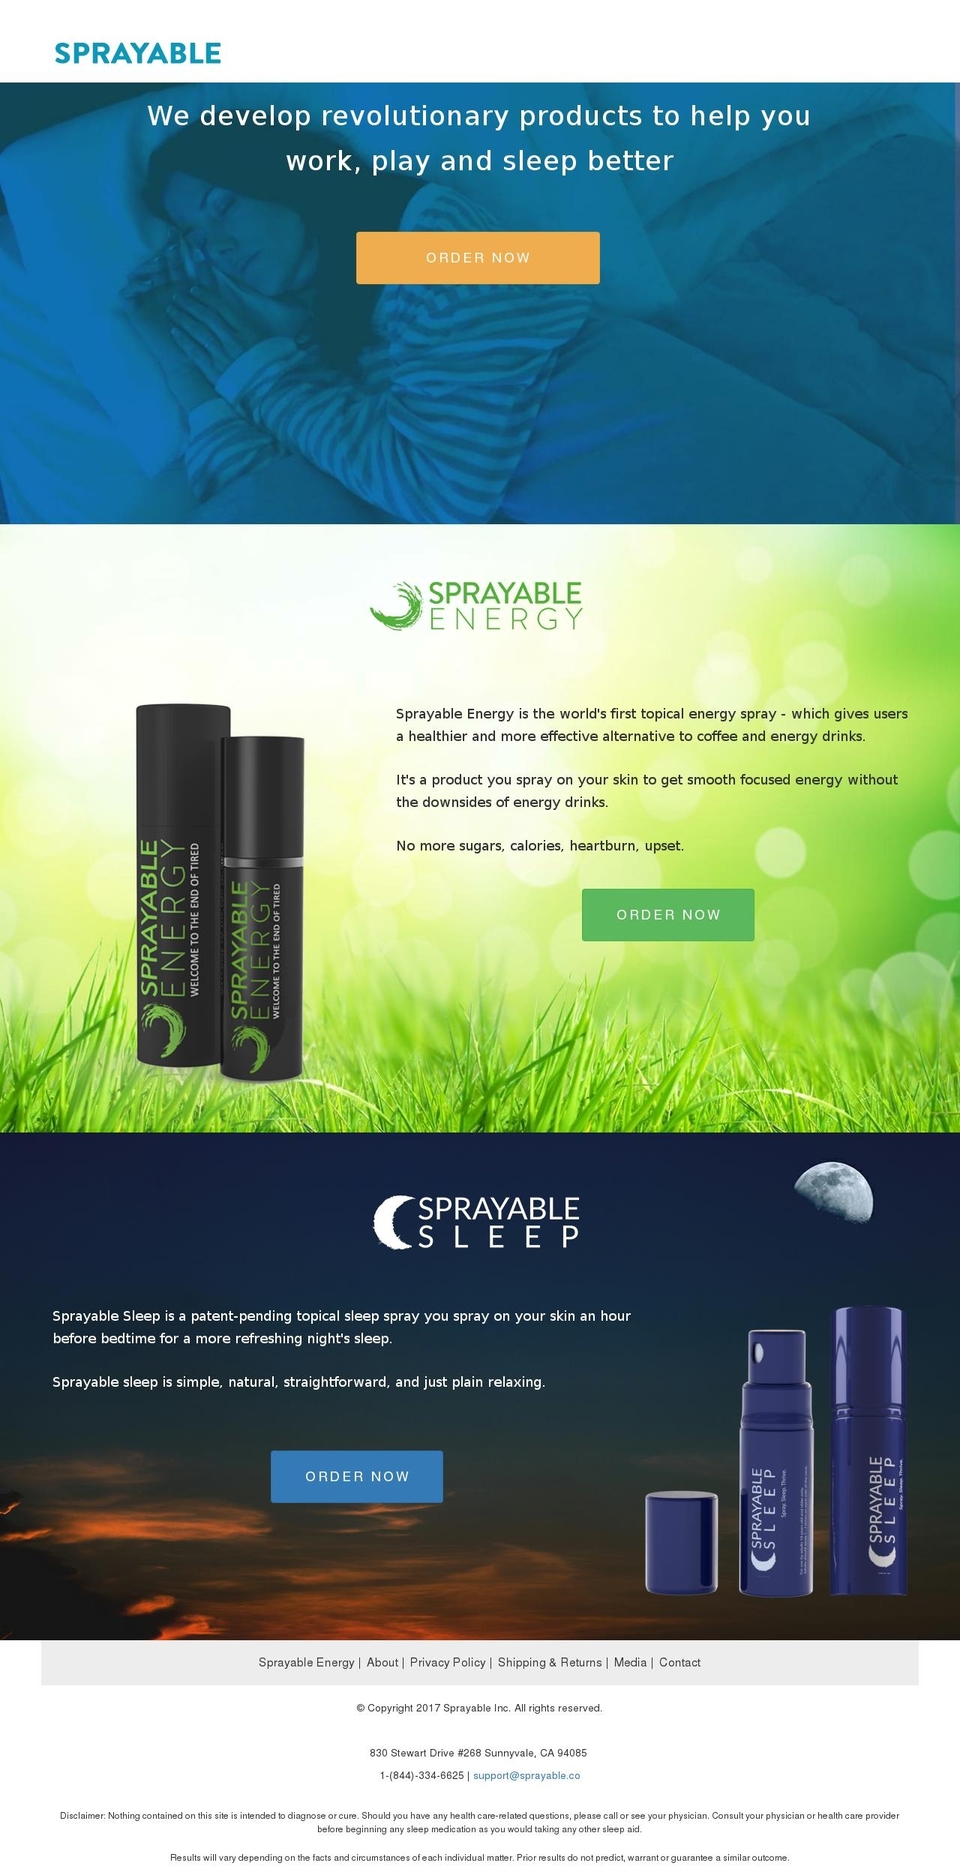 Sprayable Sleep + Energy Shopify theme site example sprayableenergy.org